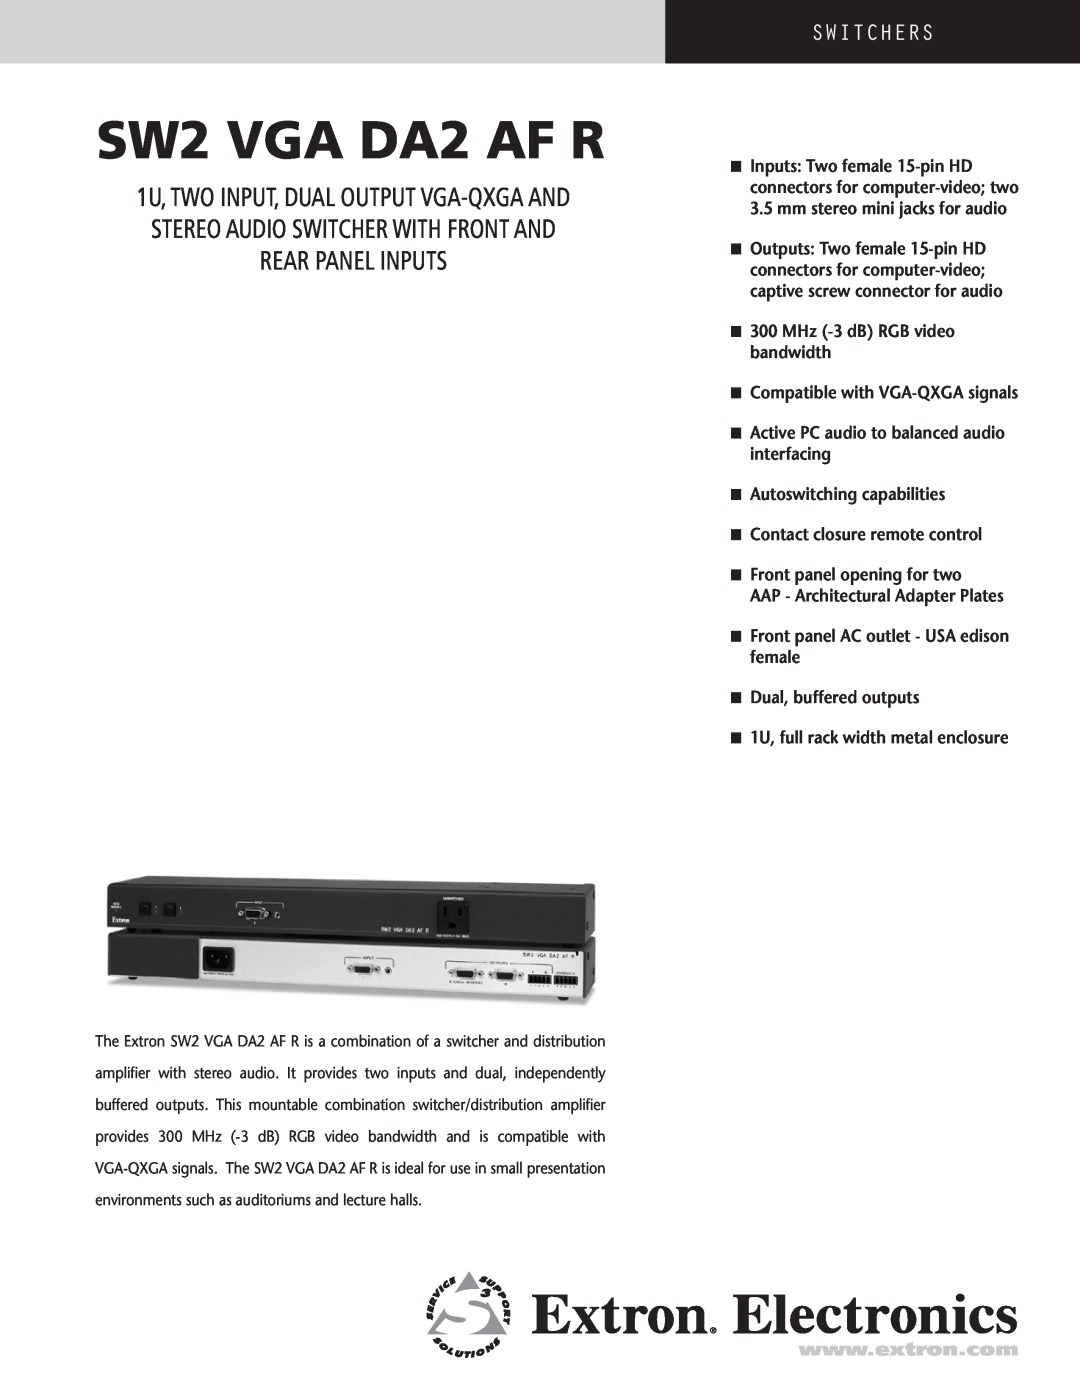 Extron electronic SW2 VGA DA2AF R manual SW2 VGA DA2 AF R, Switchers, n 300 MHz -3 dB RGB video bandwidth 